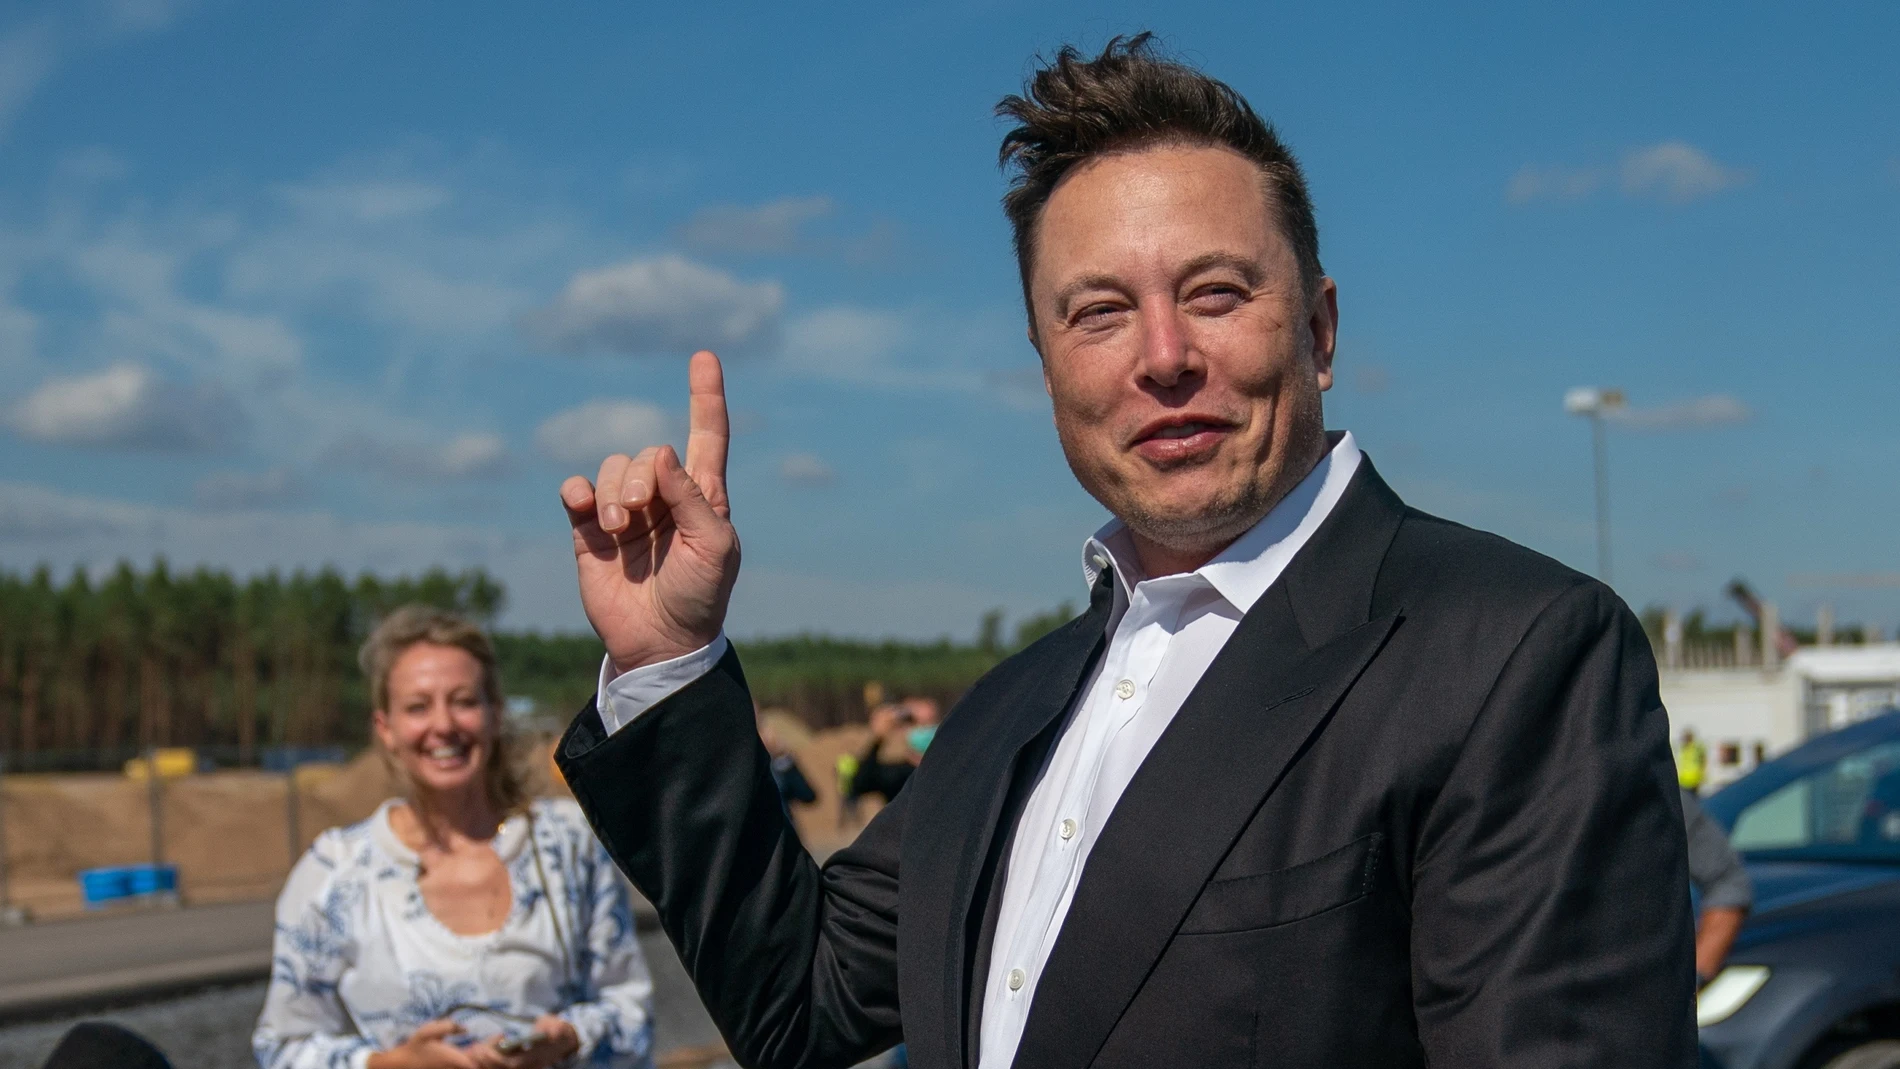 El magnate Elon Musk en el sitio de construcción de la Giga Fábrica Tesla, en Gruenheide (Alemania) en 2020. EFE/ Alexander Becher ARCHIVO